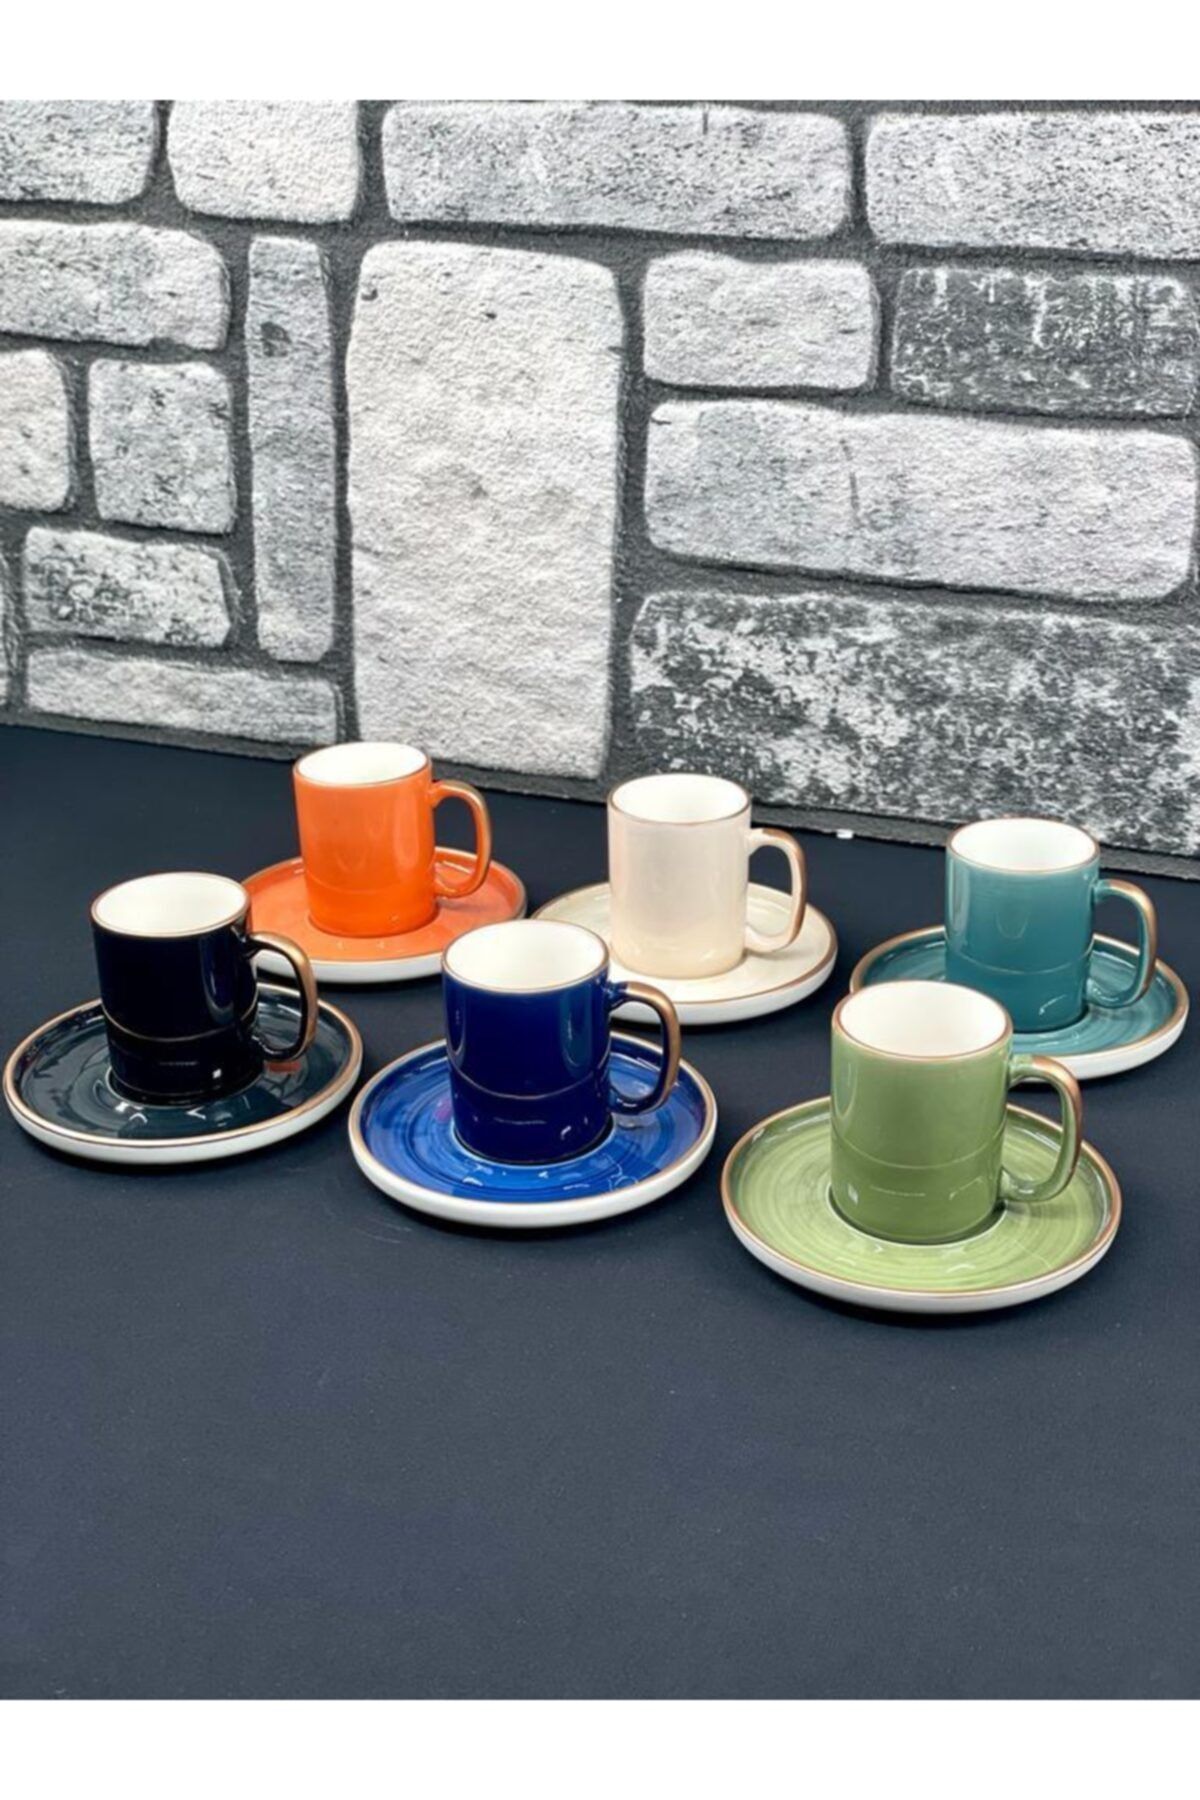 YzHome Acar 6 Kişilik Porselen Yaldızlı Özel Tasarımlı Renkli Kahve Fincan Takımı Seti